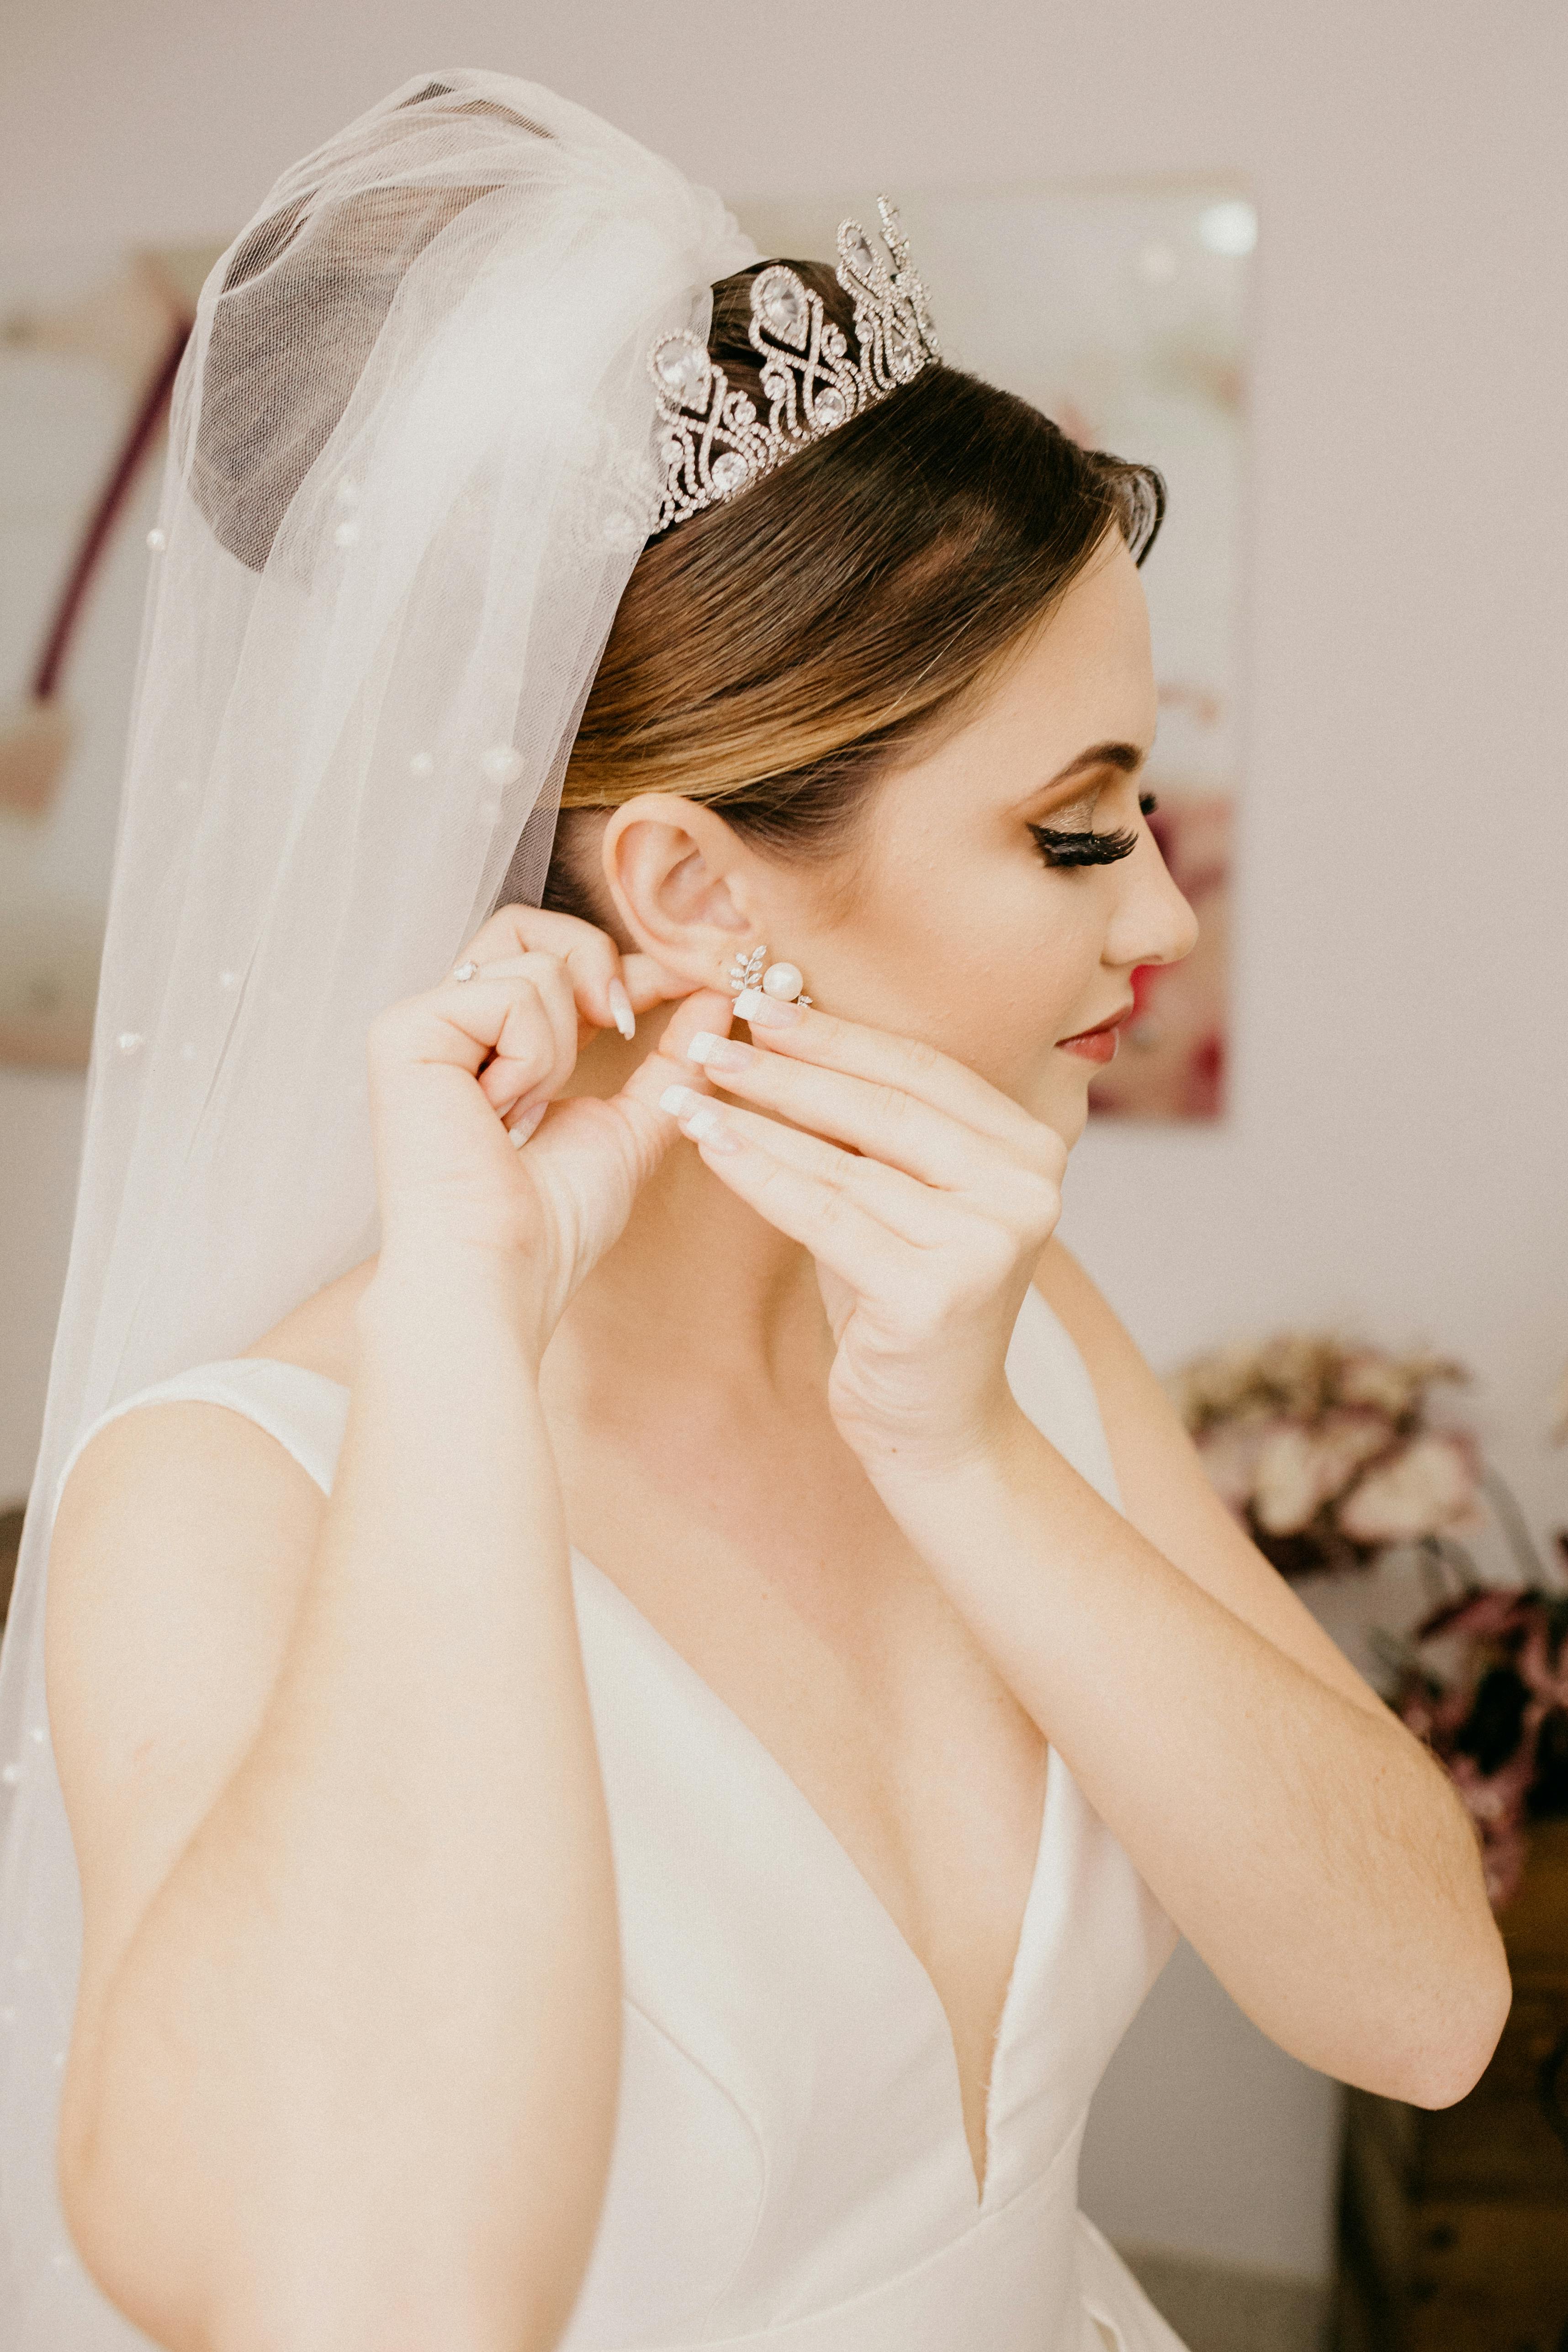 Long Bride Earring for Weddings, A Popular Design with Brides & Women |  Bride earrings, Bride earrings silver, Bridal earrings